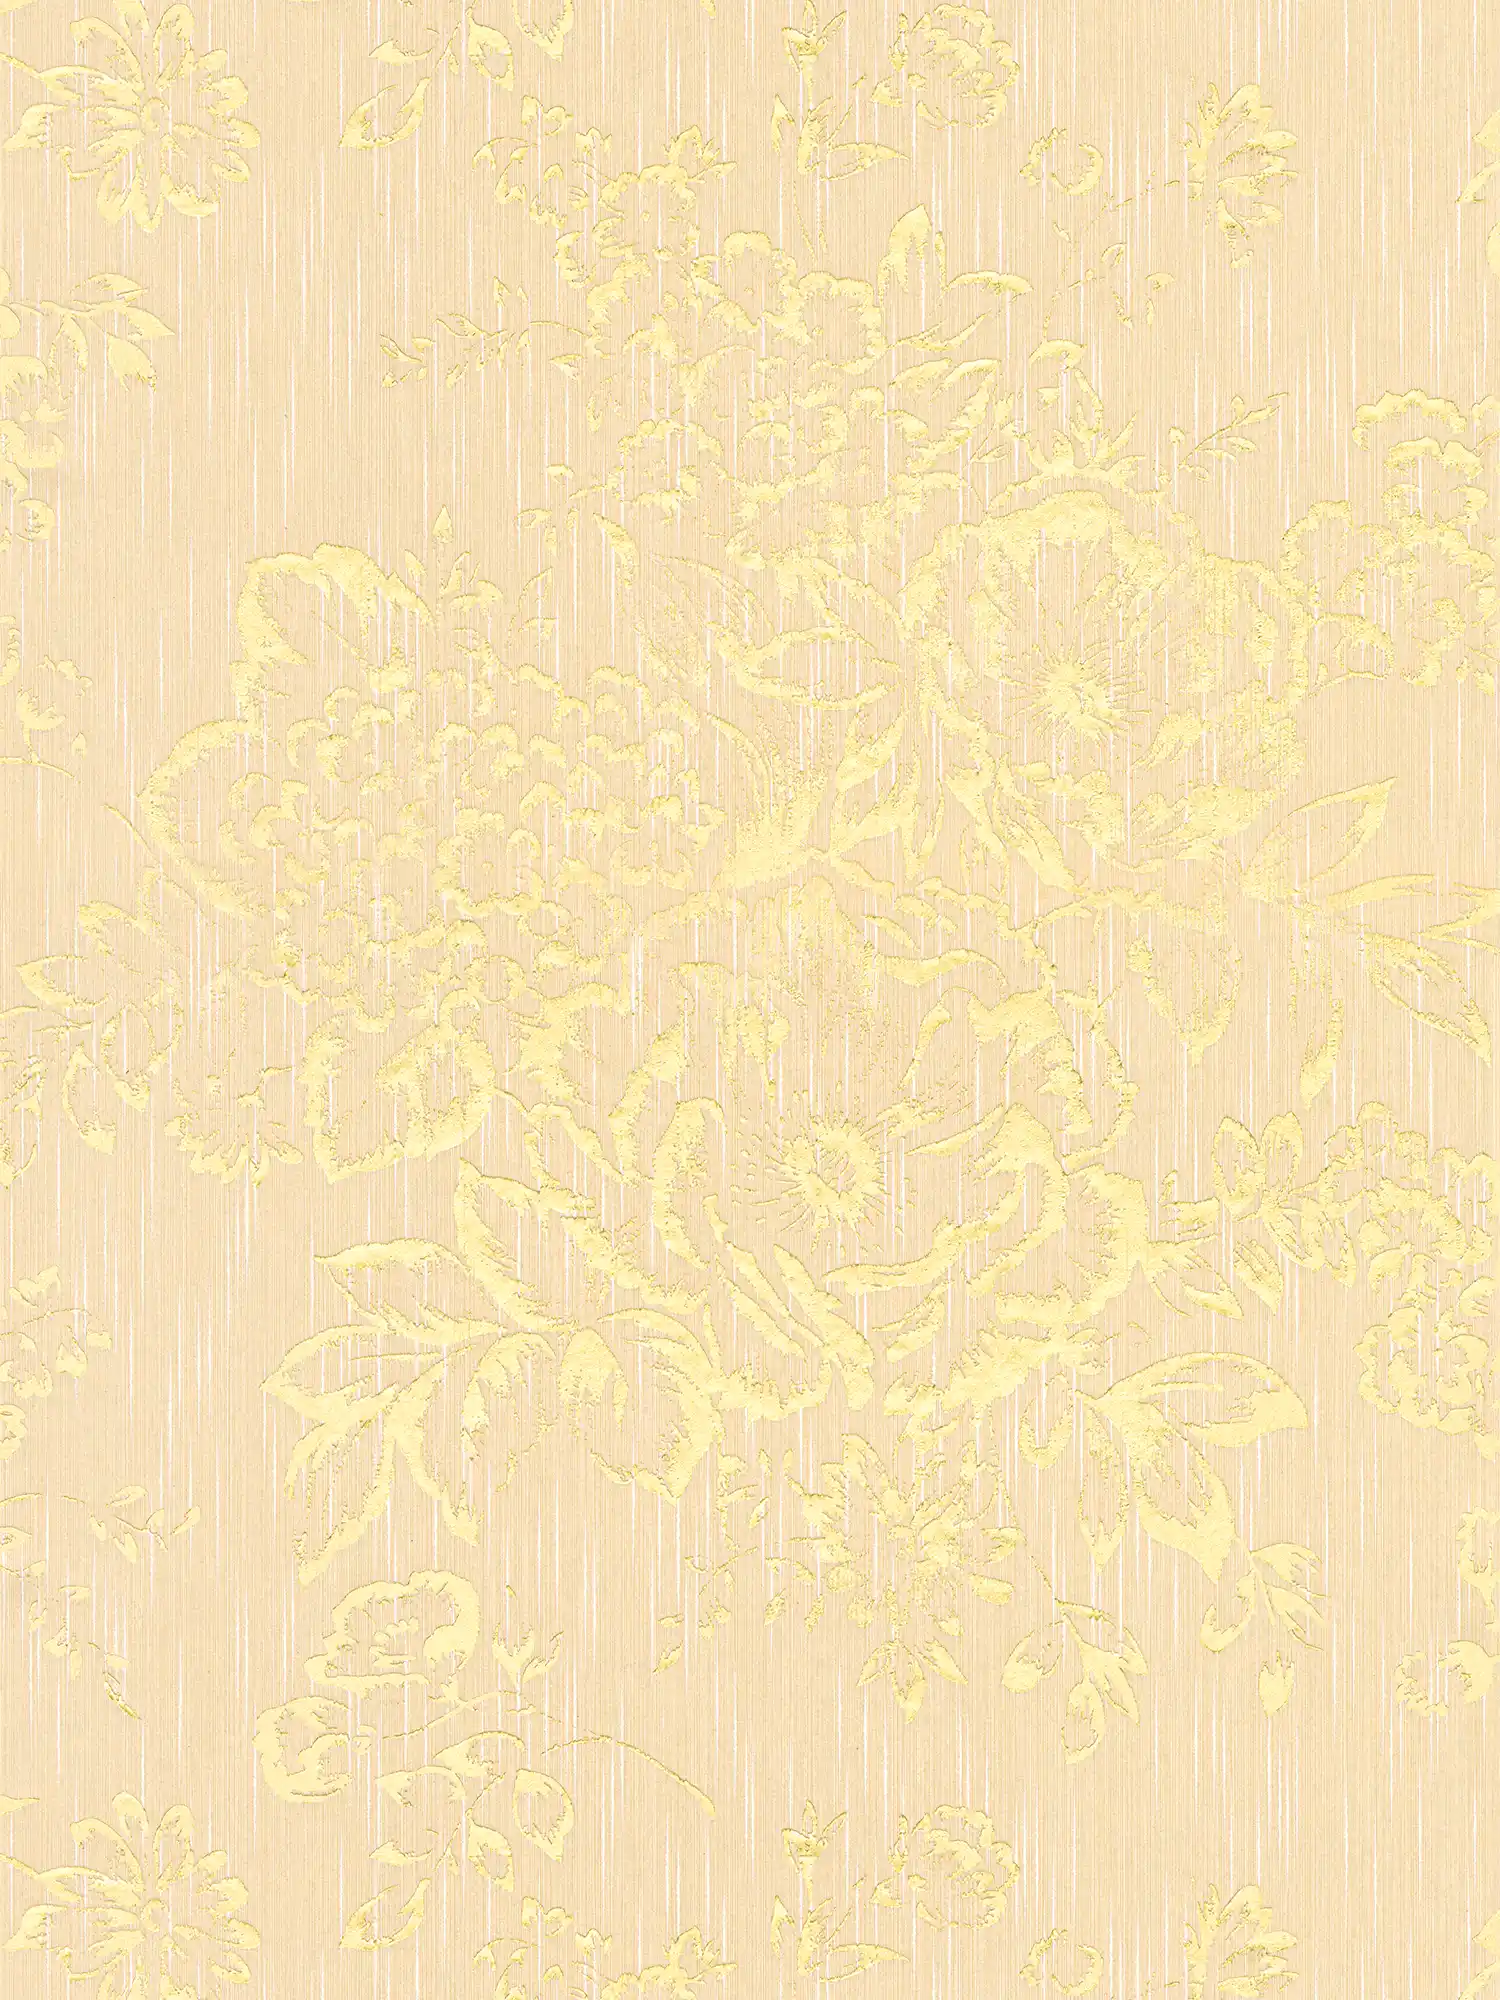         Papier peint structuré avec motif floral doré - or, crème
    